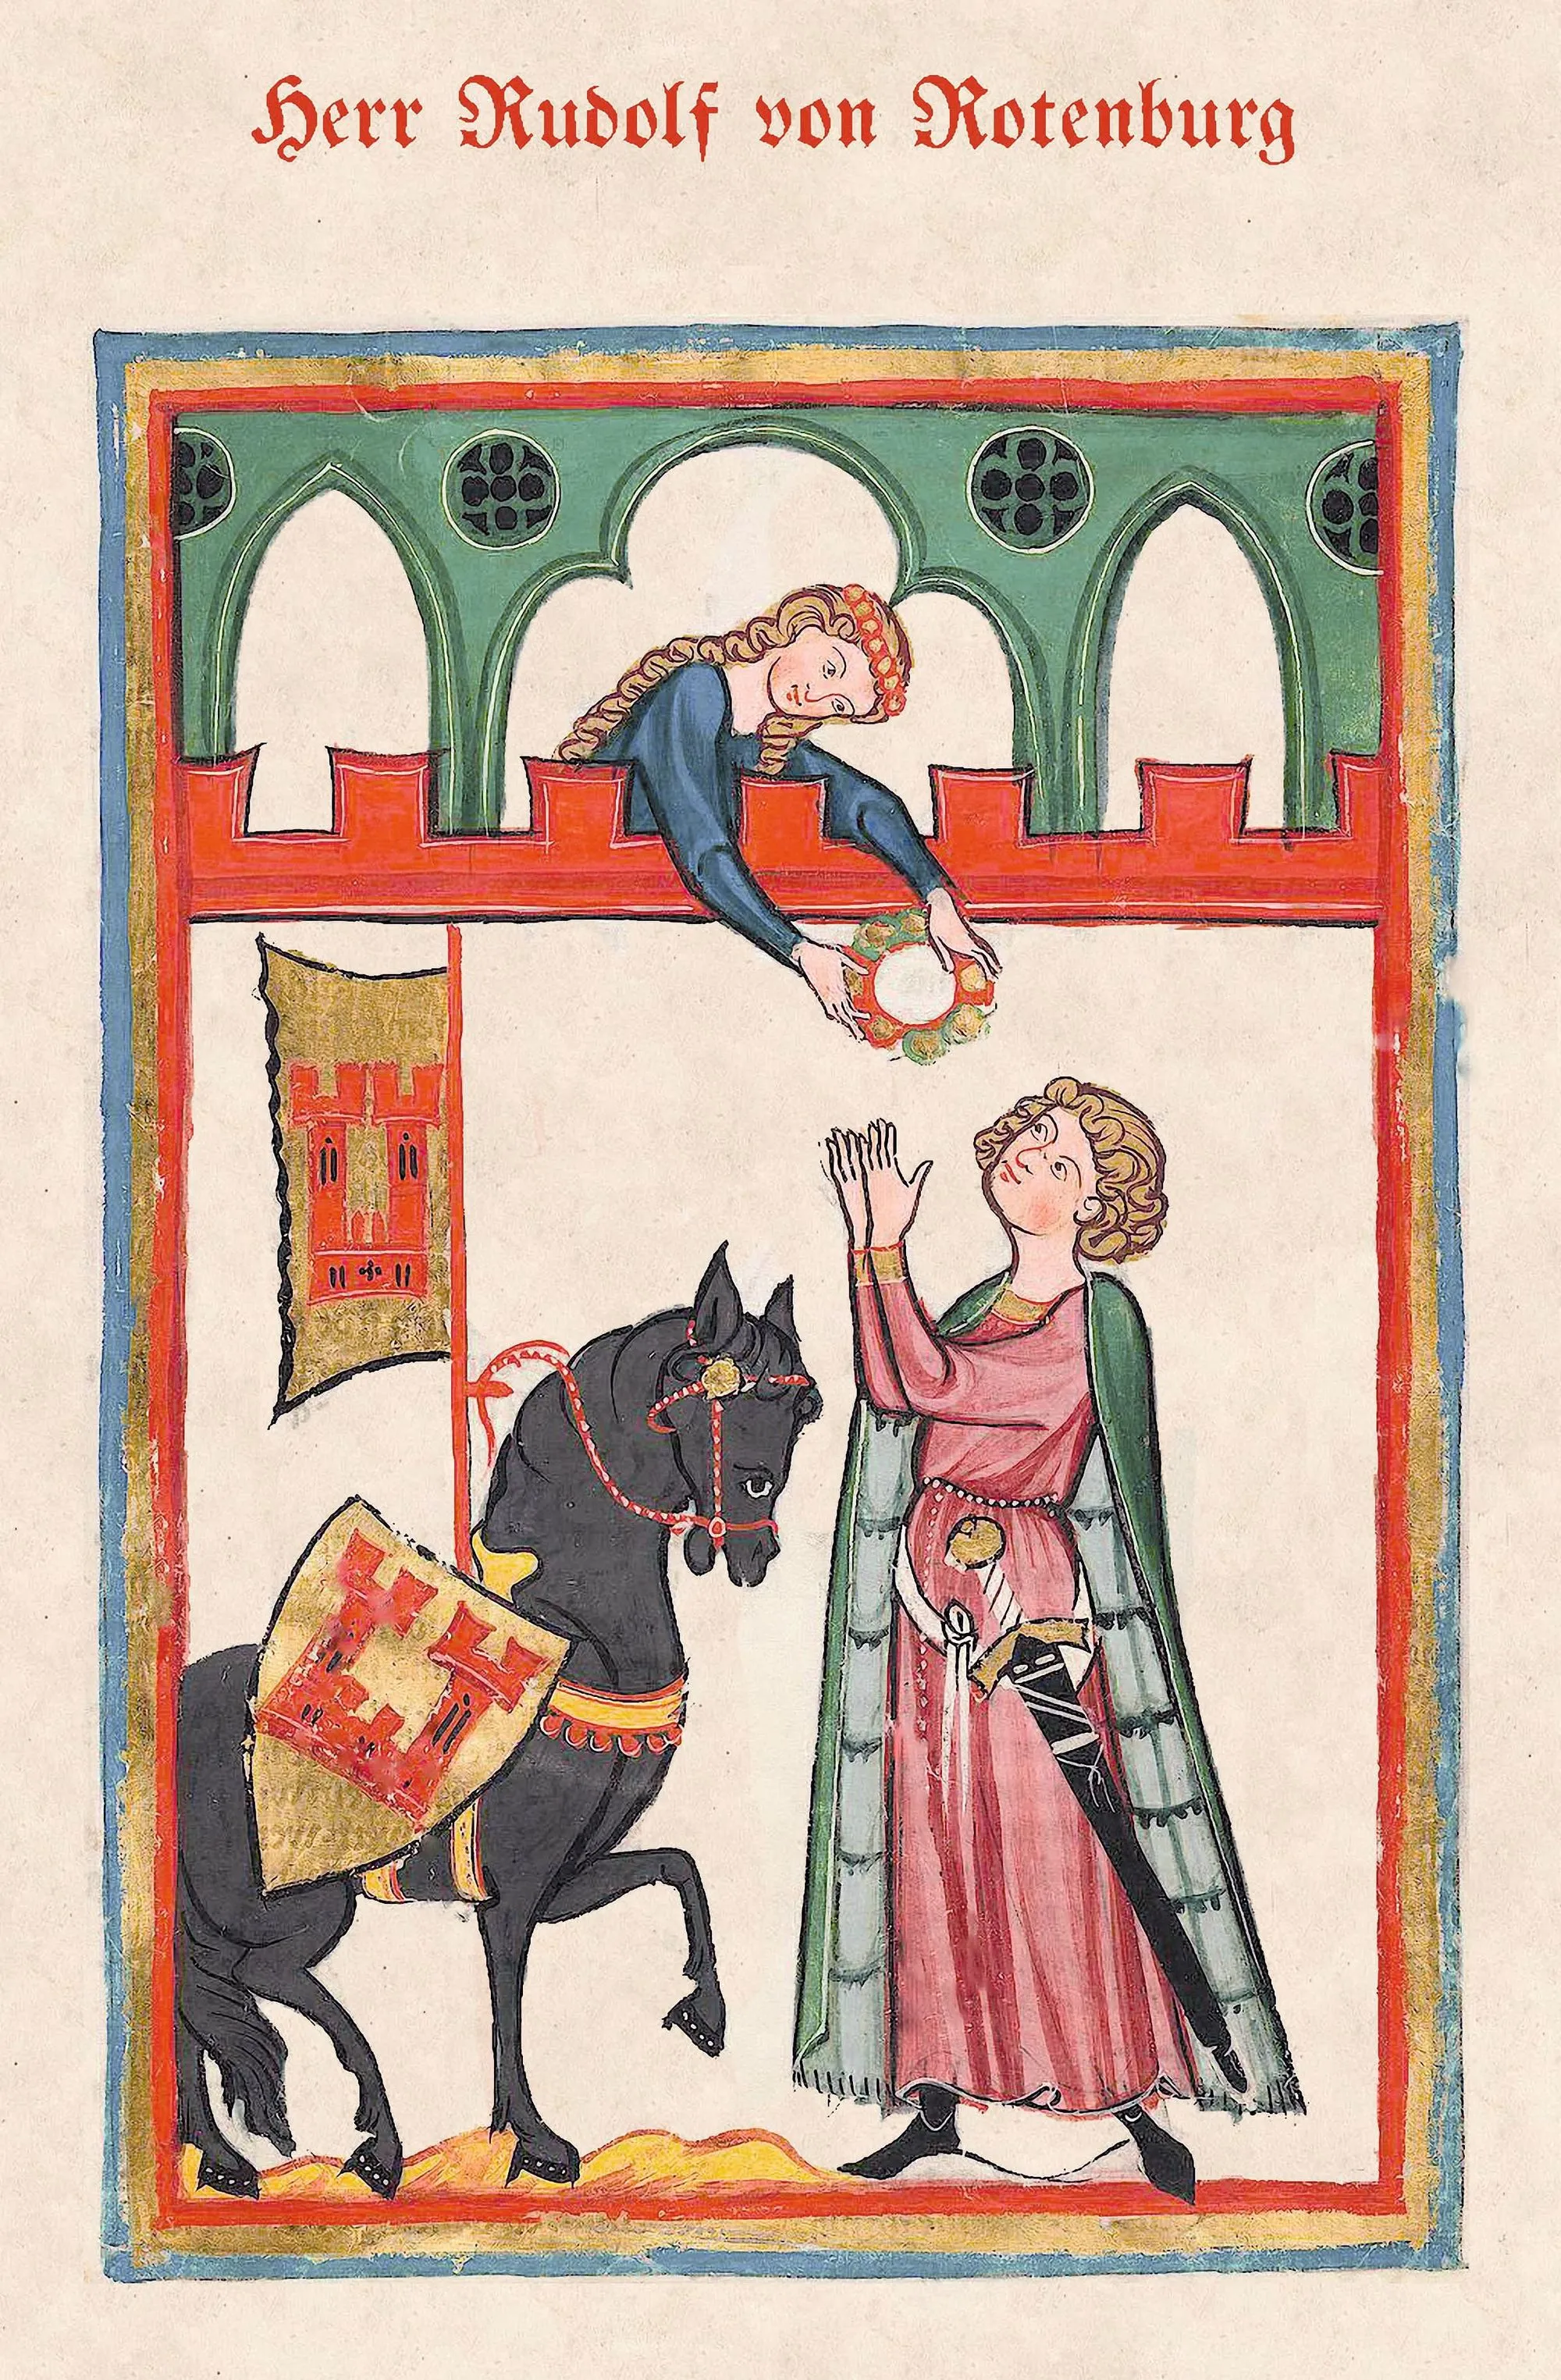 Livre de chants médiéval appartenant à Rudolf von Rotenburg, 1257.